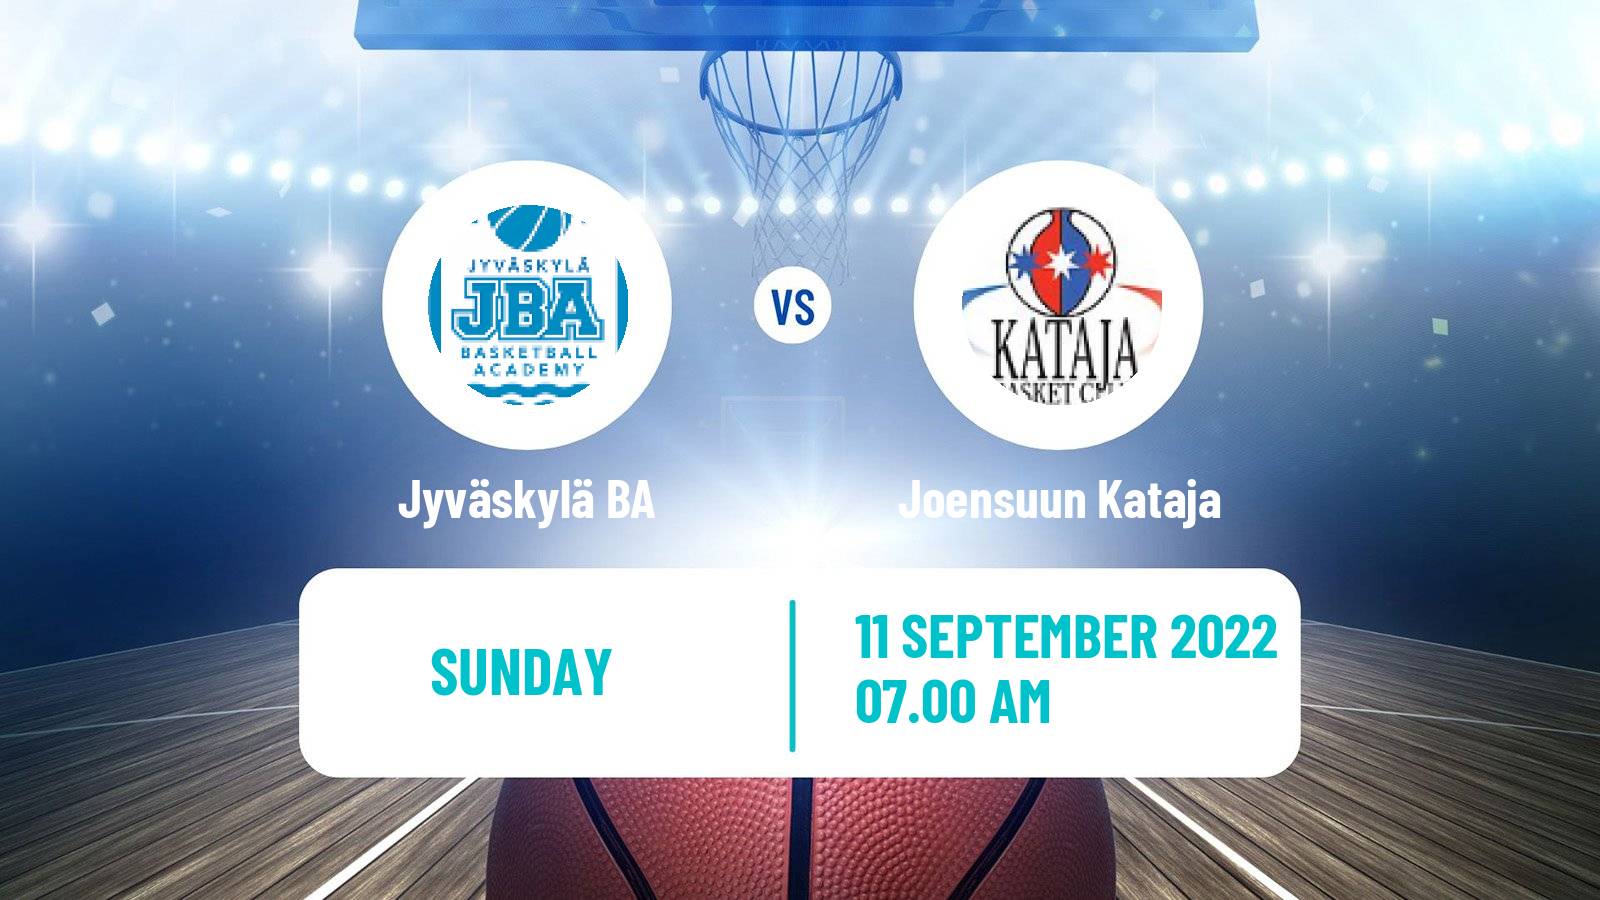 Basketball Club Friendly Basketball Jyväskylä BA - Joensuun Kataja